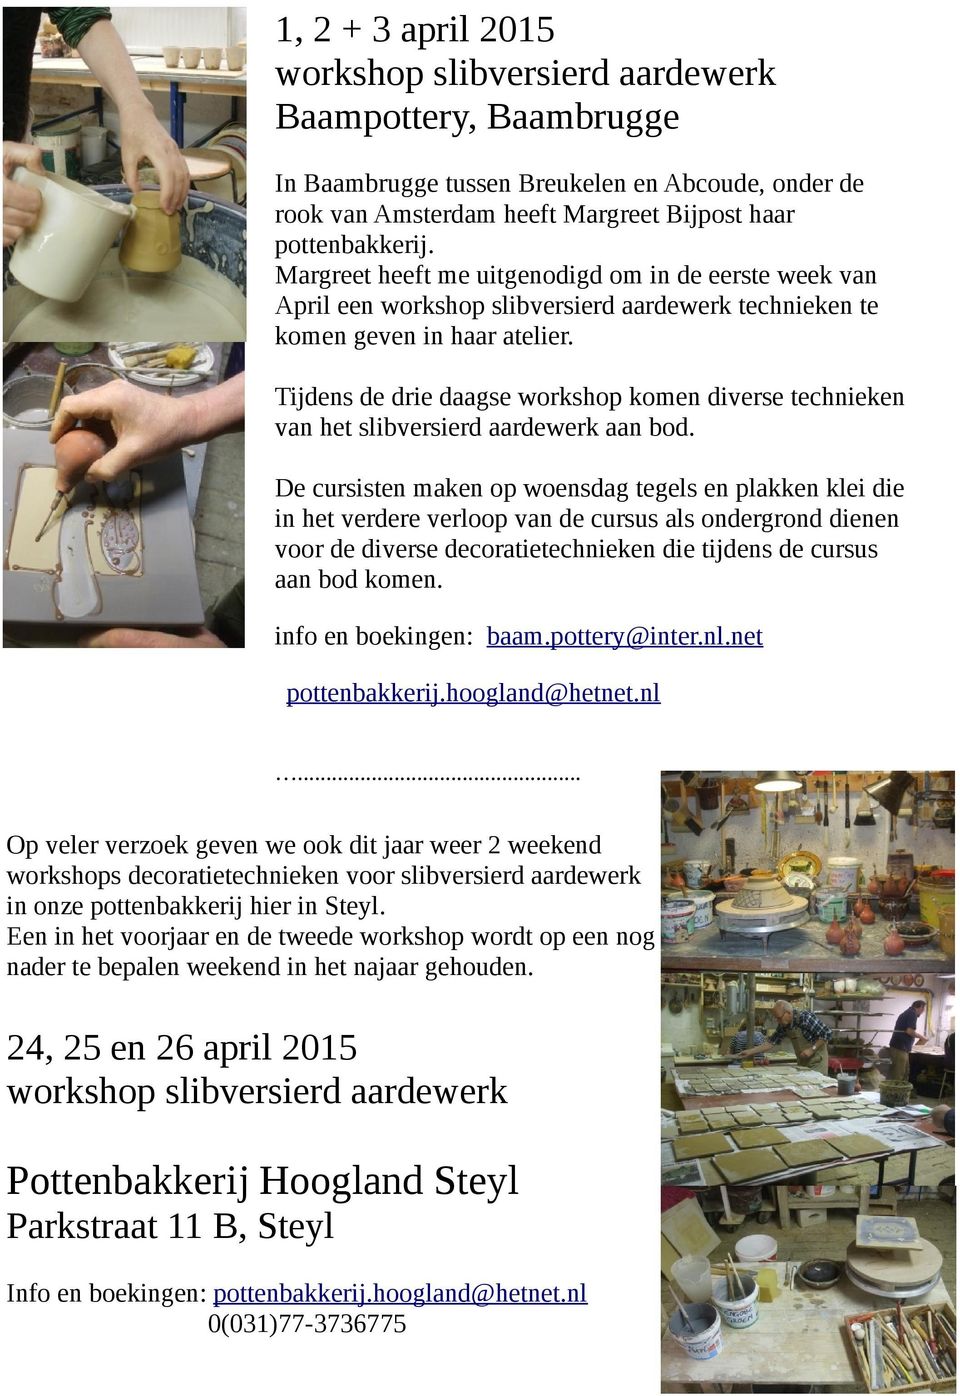 Tijdens de drie daagse workshop komen diverse technieken van het slibversierd aardewerk aan bod.